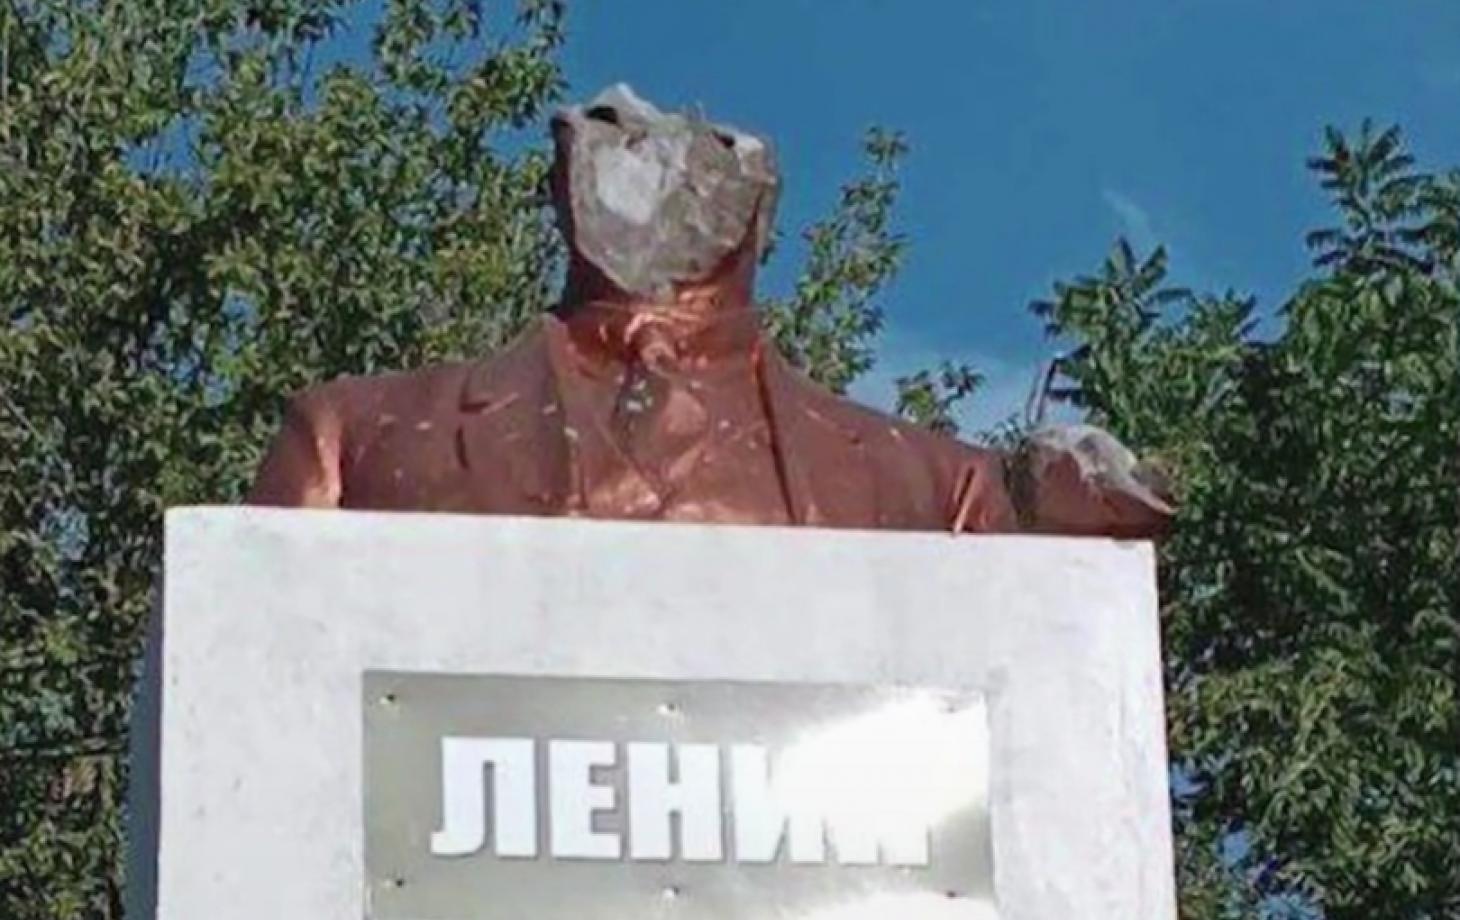 бюст Ленина